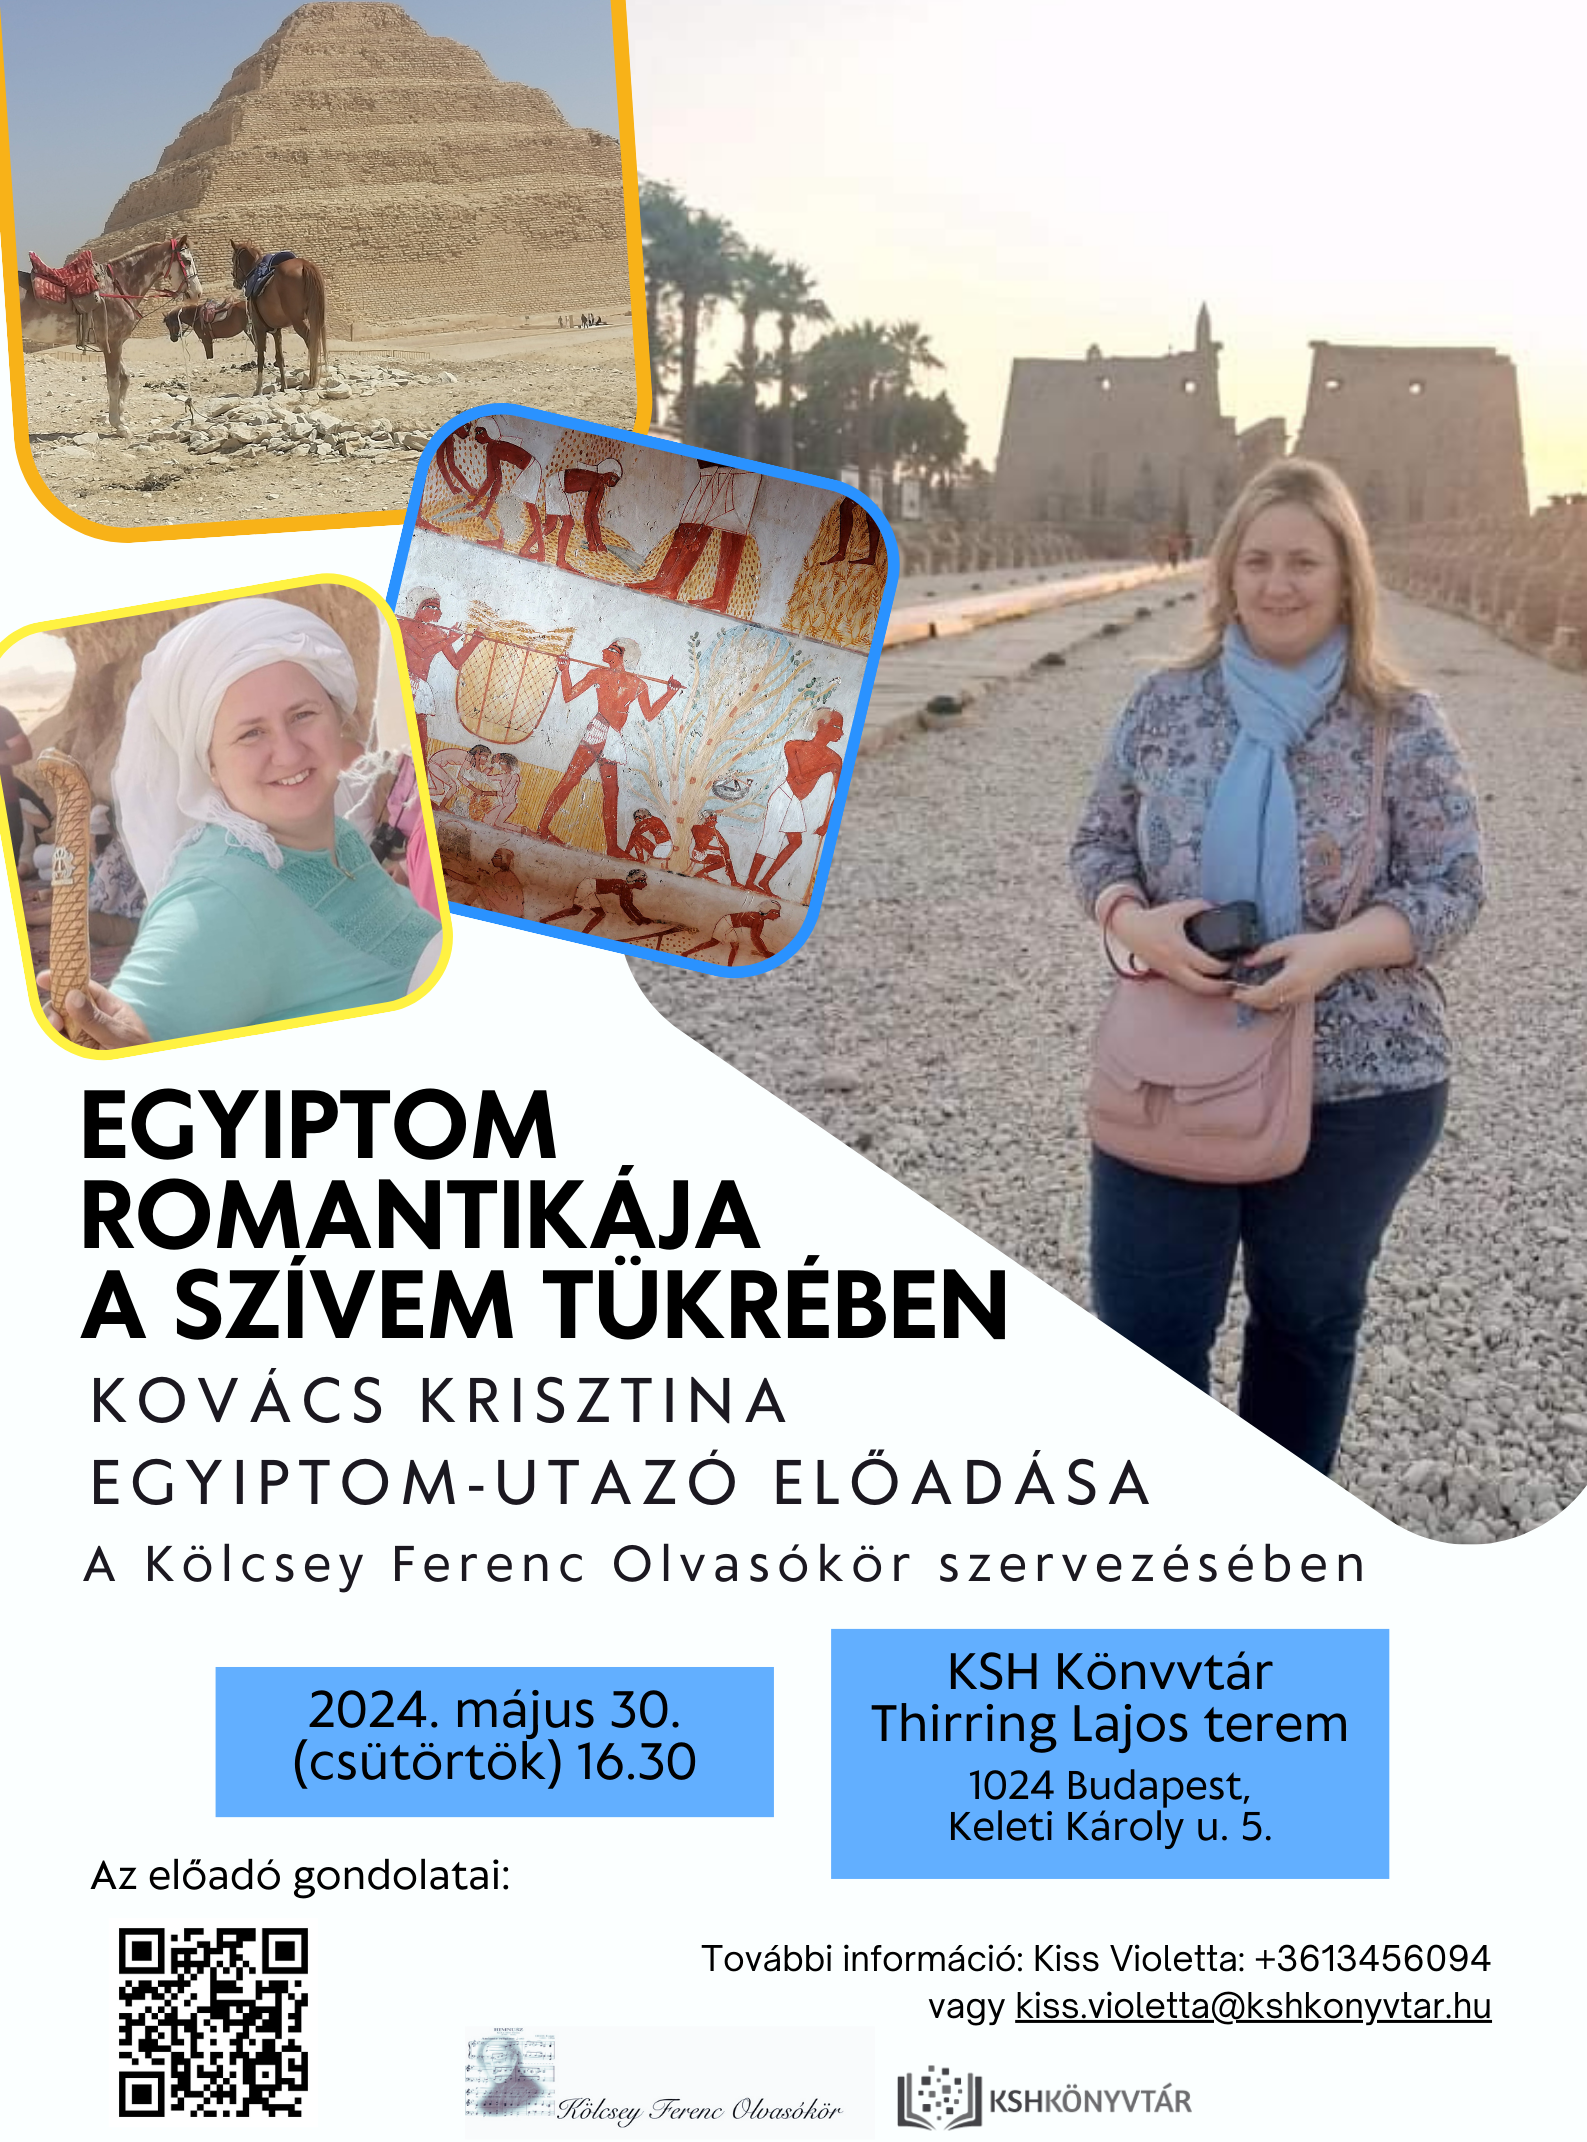 Egyiptom romantikája a szívem tükrében – Kovács Krisztina Egyiptom-utazó előadásó